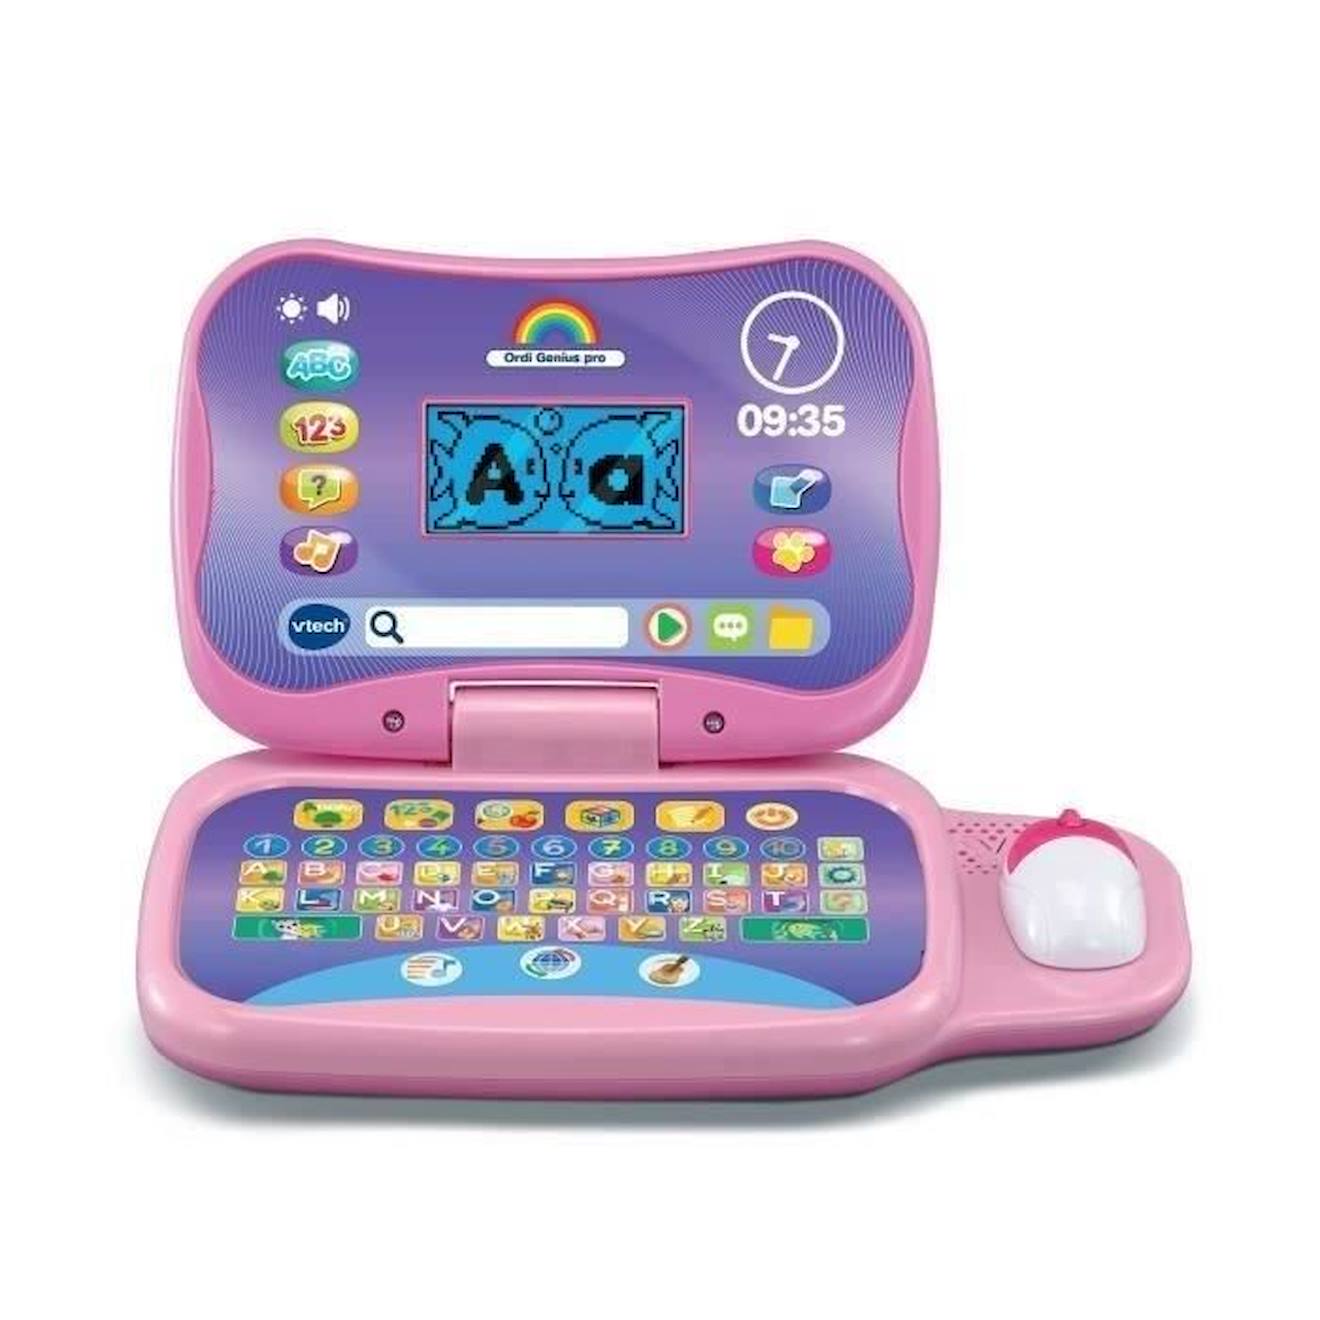 Premier ordinateur éducatif pour enfant